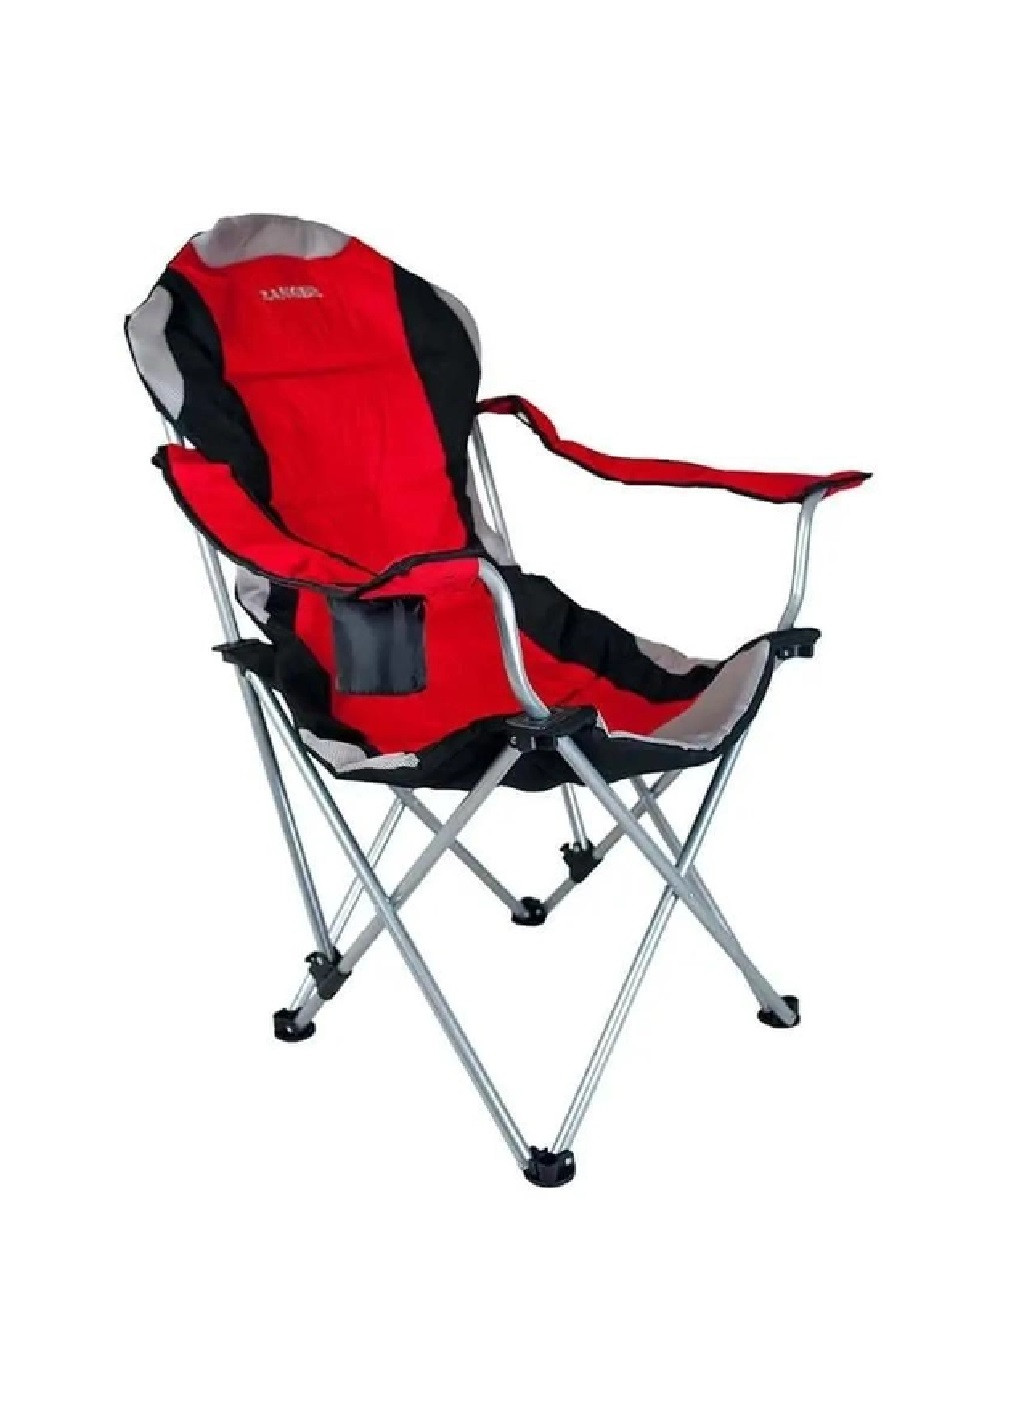 Раскладное кресло стул с подлокотниками для отдыха пикника кемпинга 107х63х96 см (475289-Prob) Красное с серым и черным Unbranded (265391198)